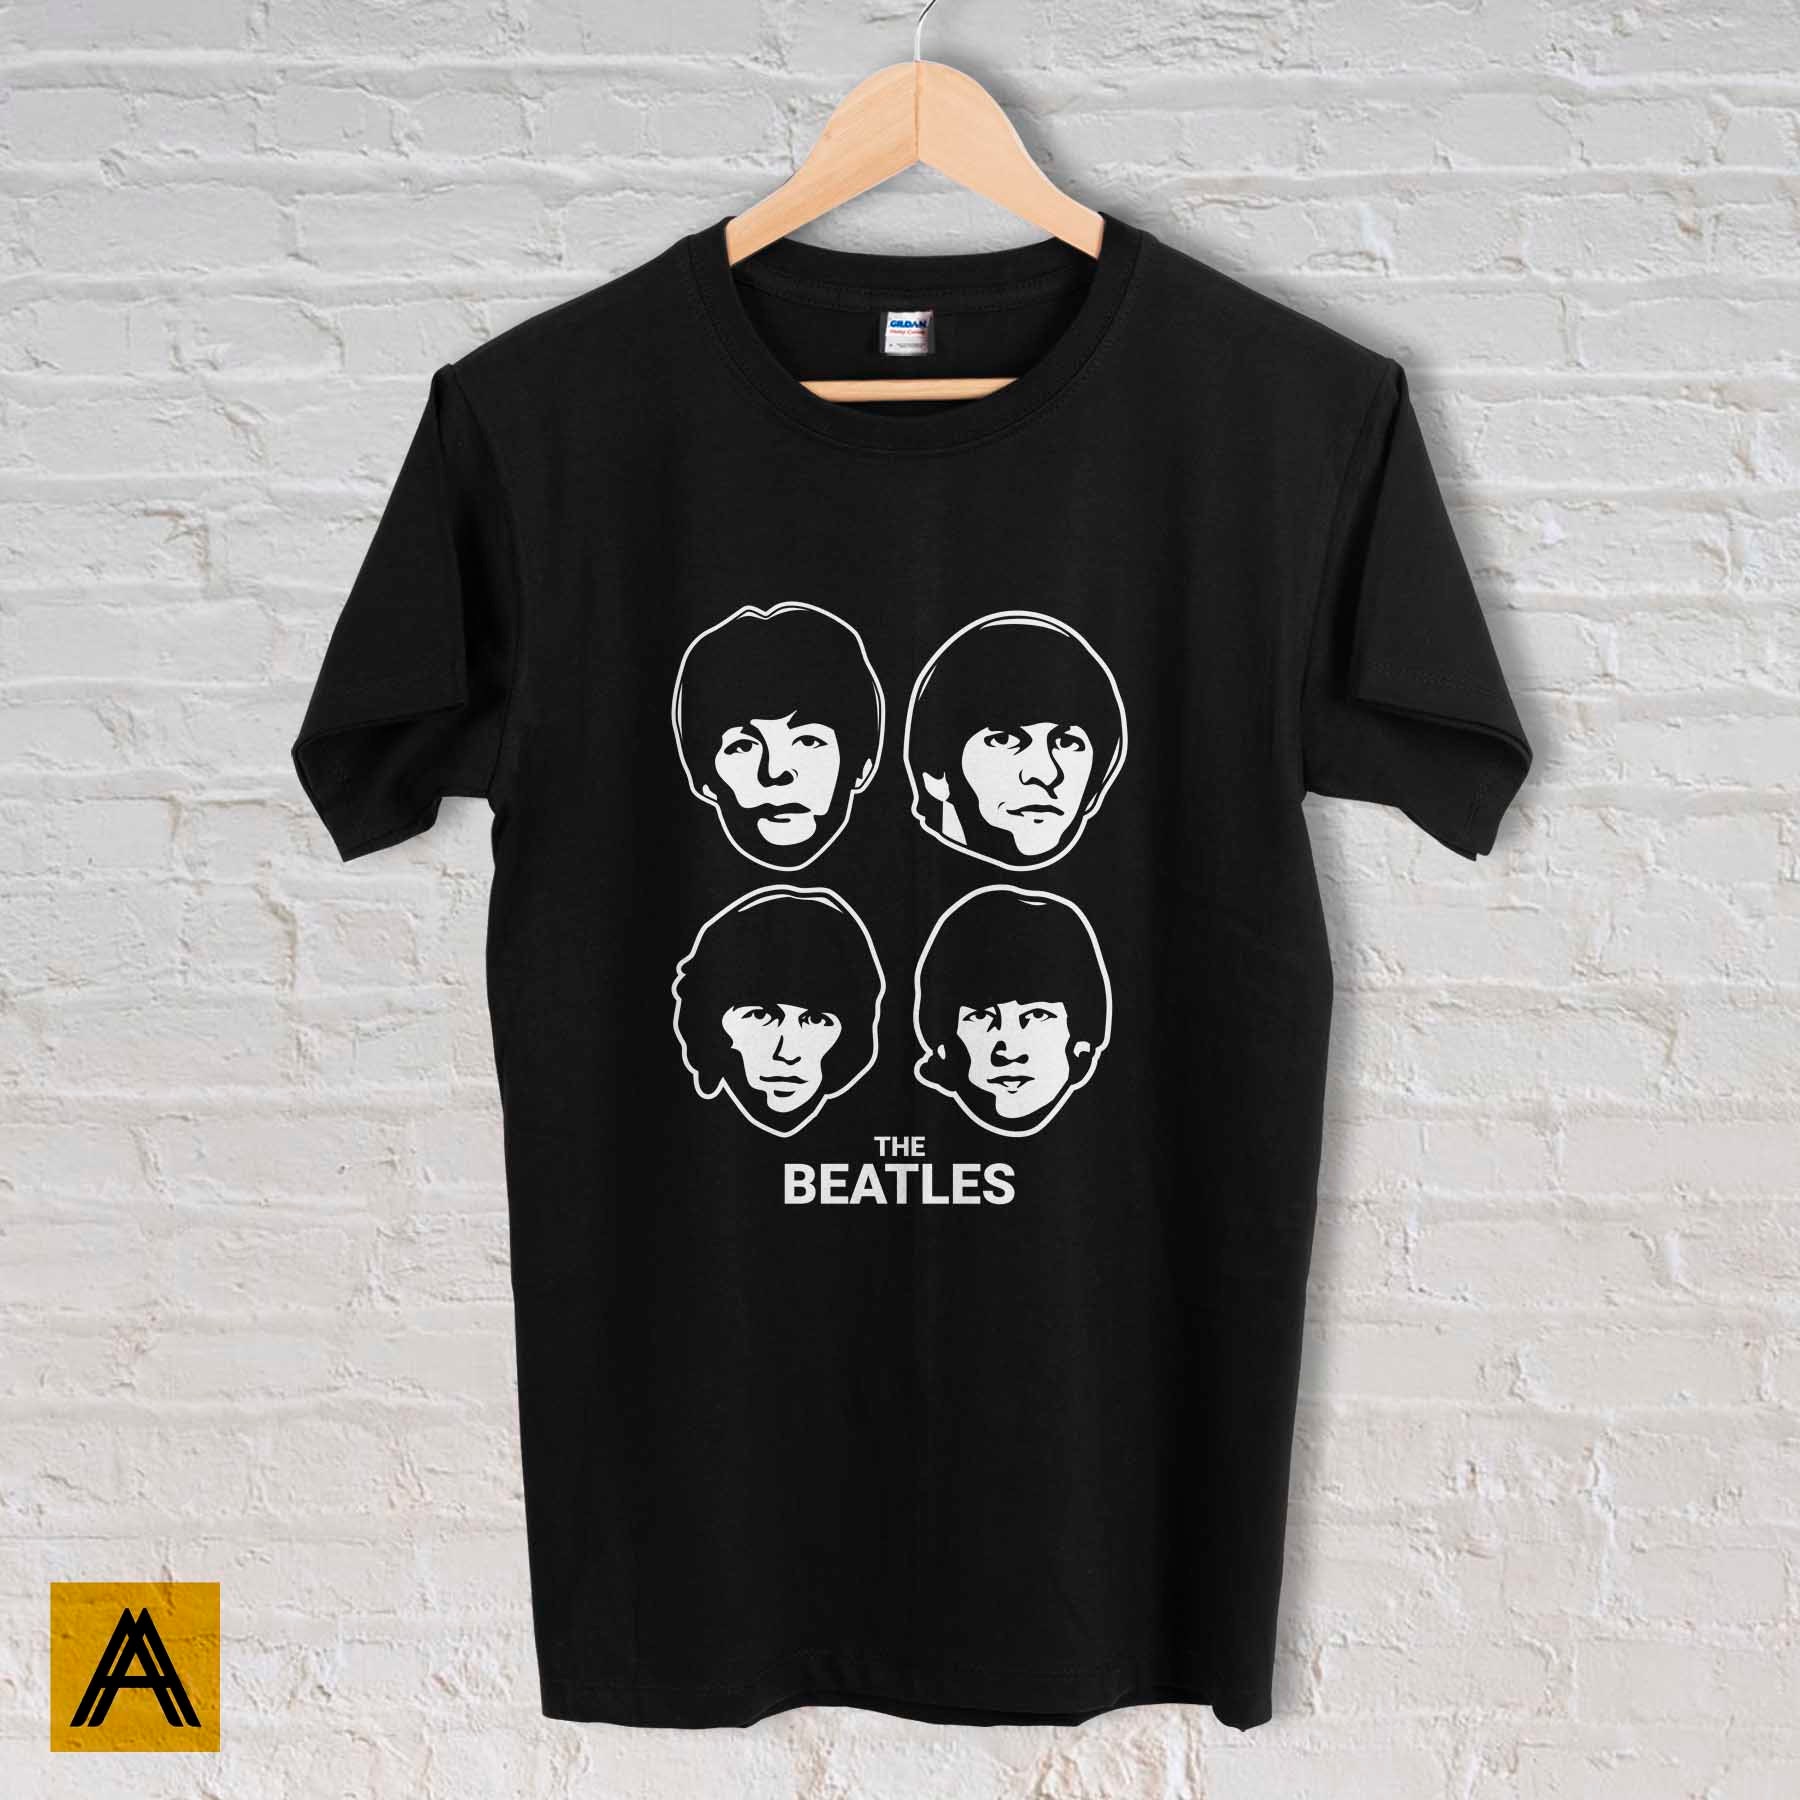 The Beatles Shirt Music Vintage Retro Classic Unisex T-shirt - Etsy UK